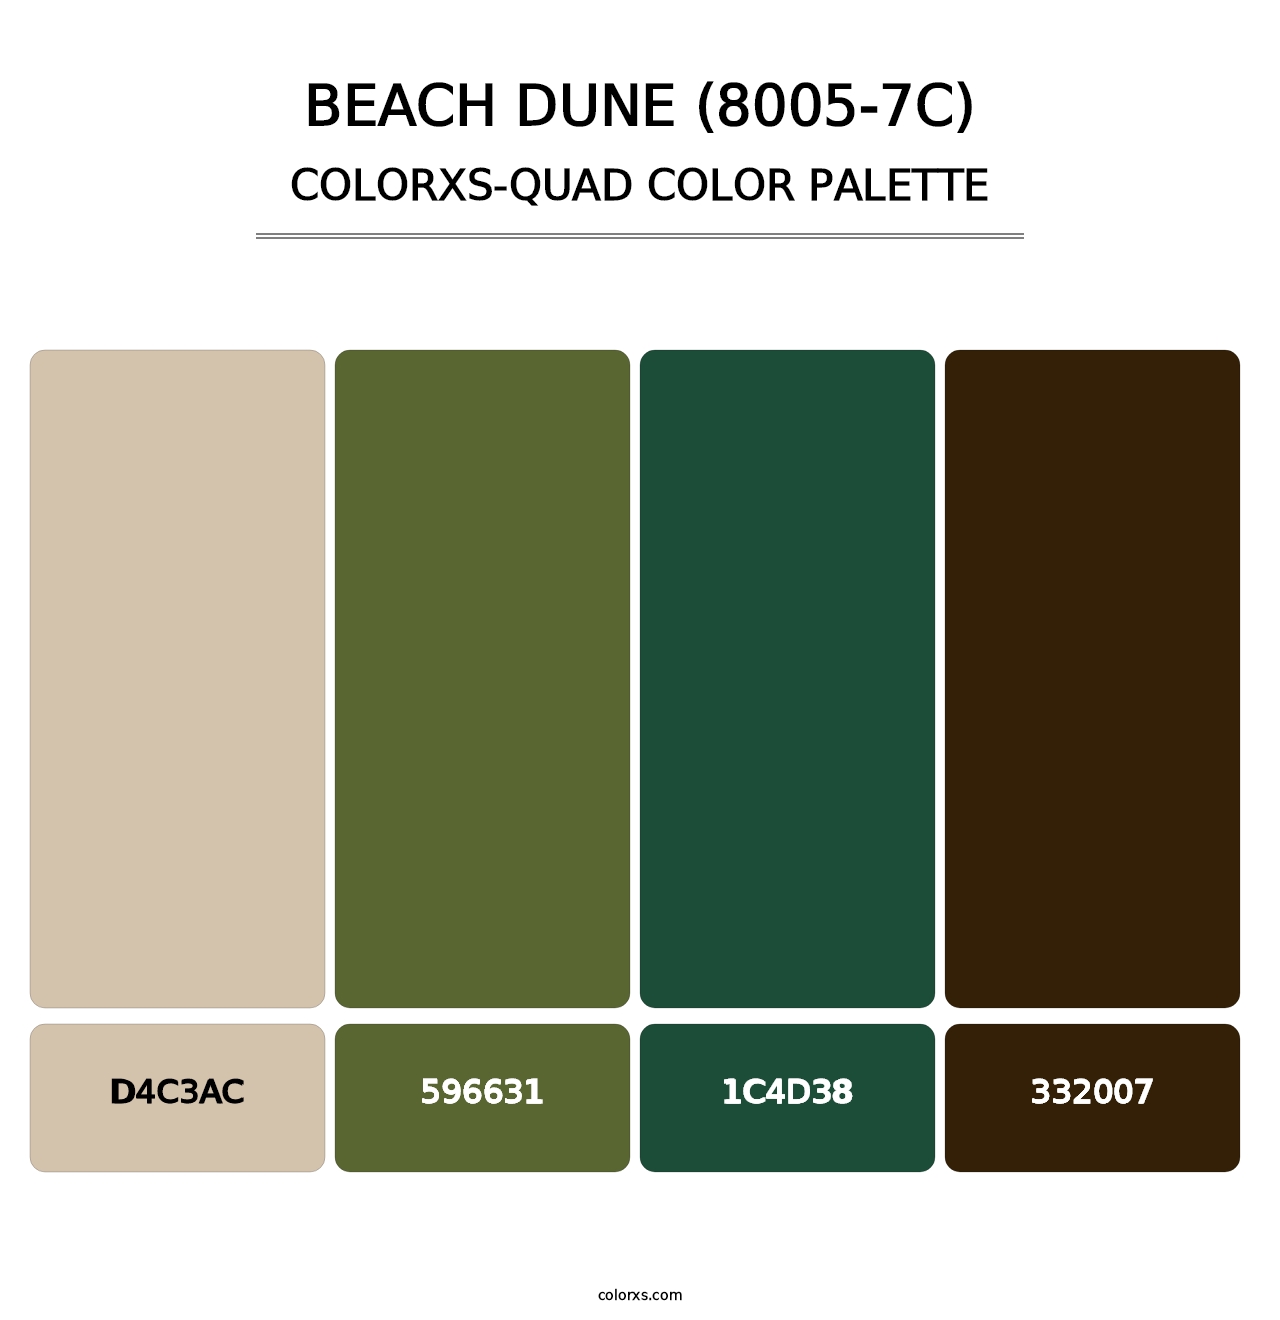 Beach Dune (8005-7C) - Colorxs Quad Palette